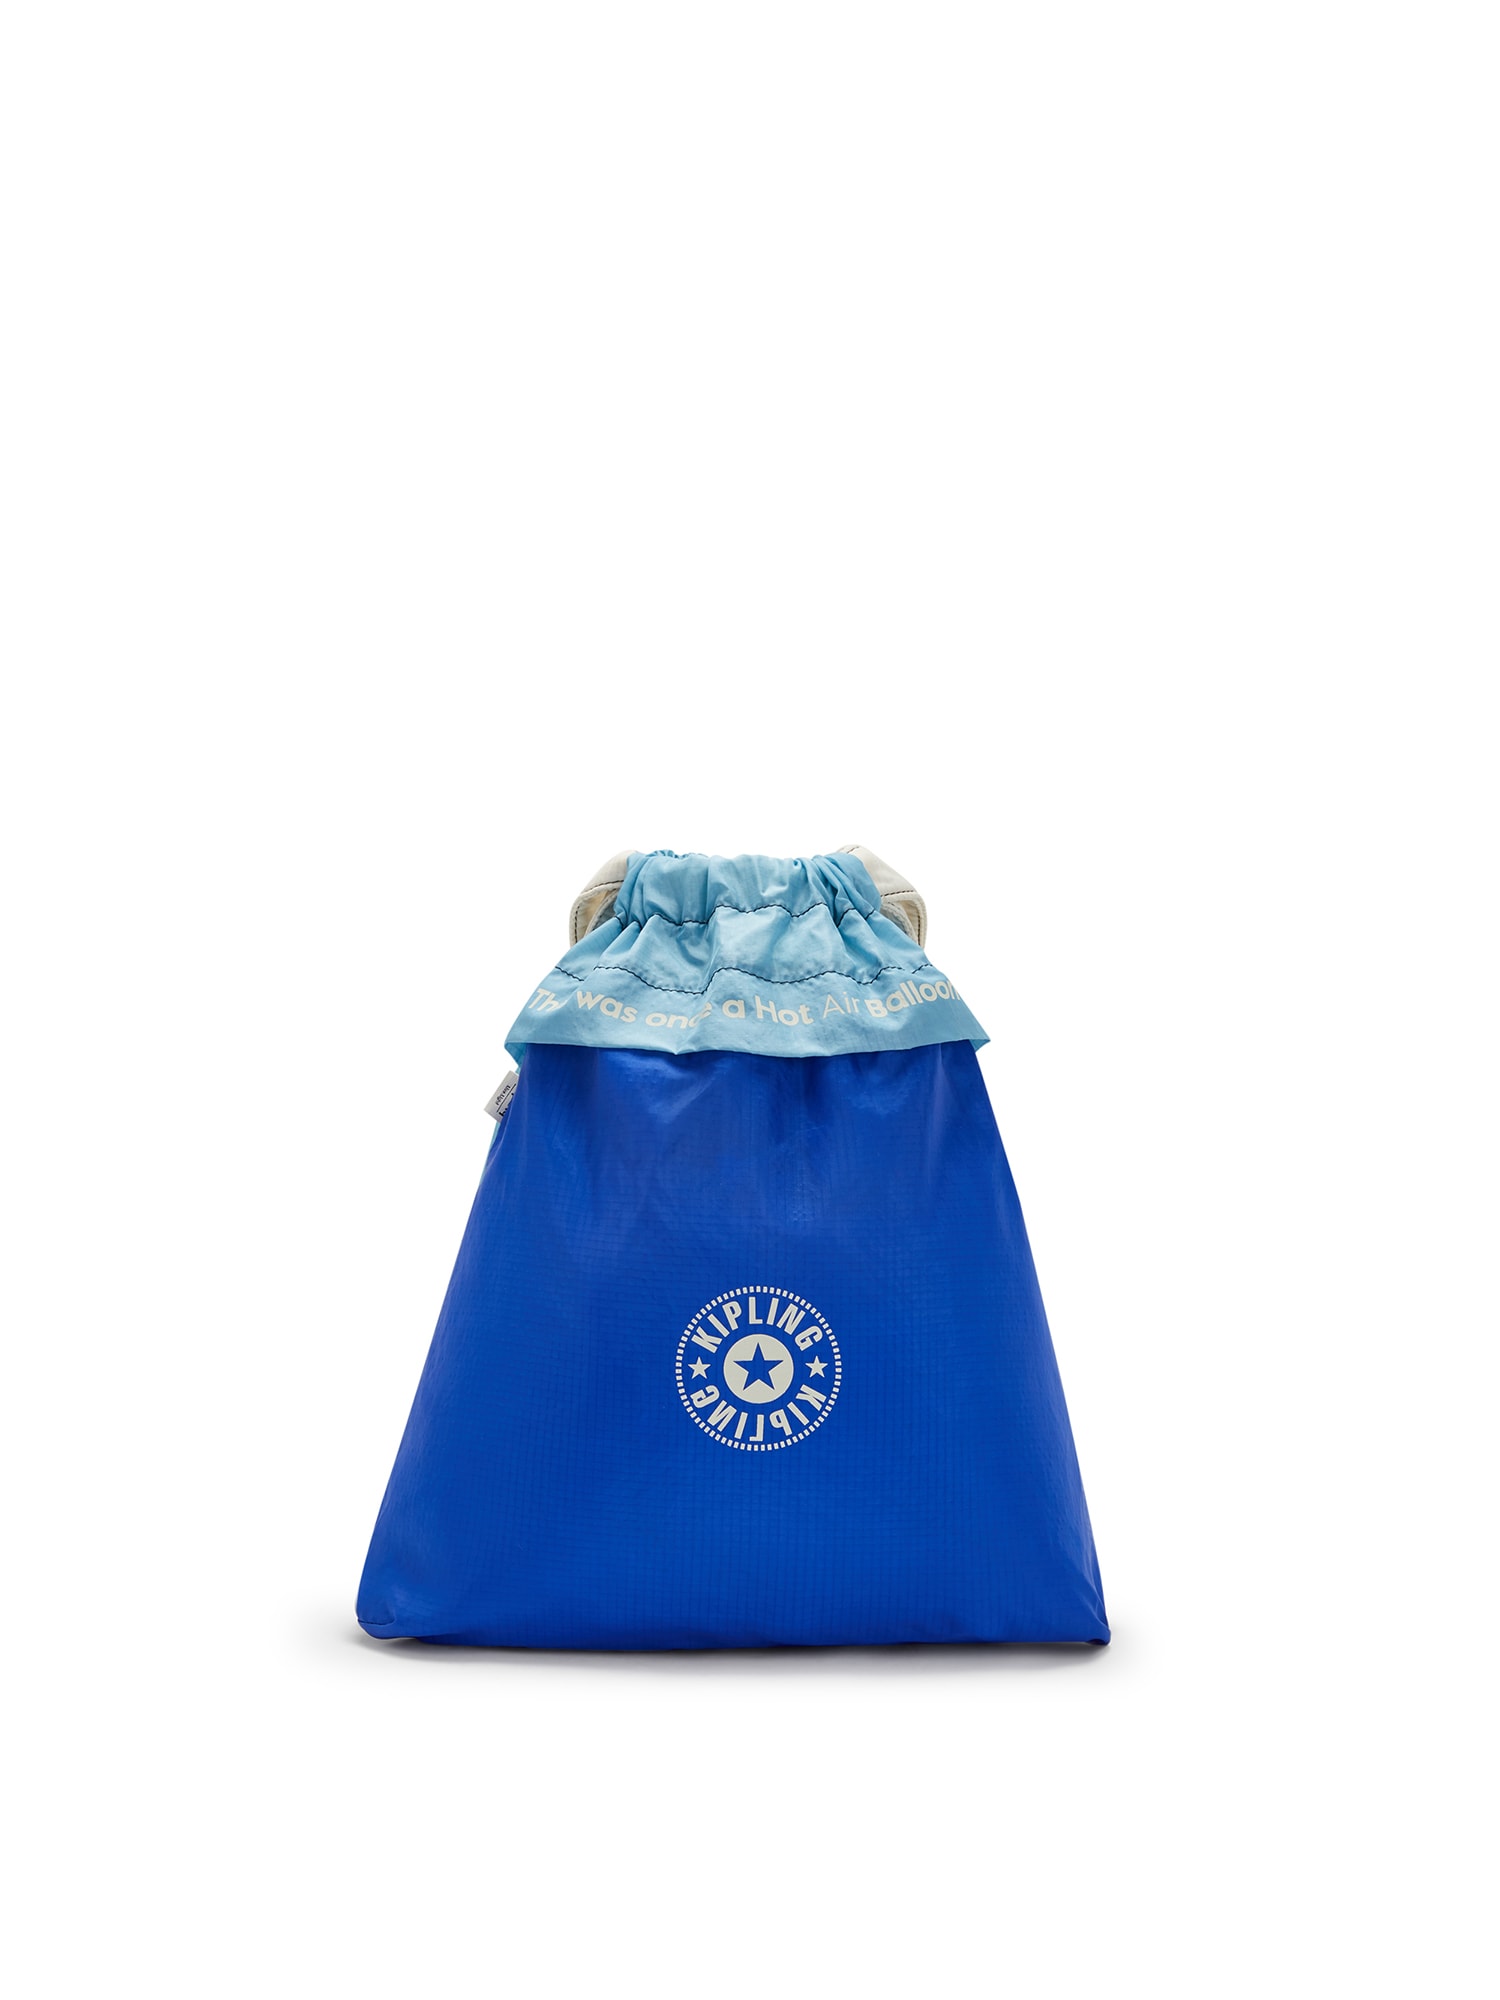 KIPLING Krepšys-maišas 'Hot Air' balta / šviesiai mėlyna / pastelinė mėlyna